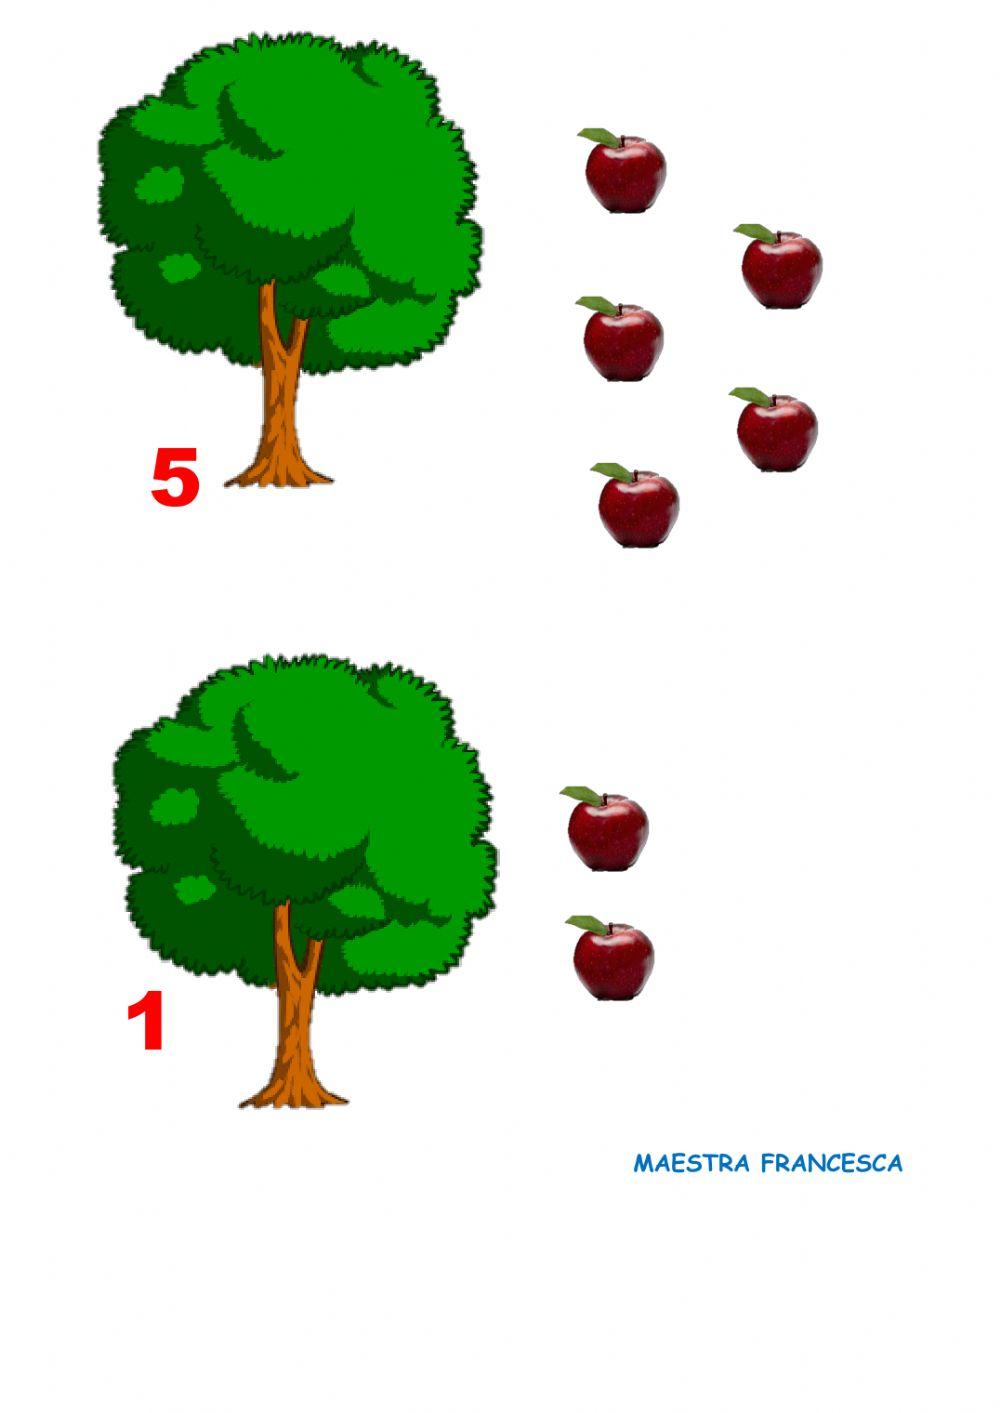 Quante mele ci sono sull'albero?